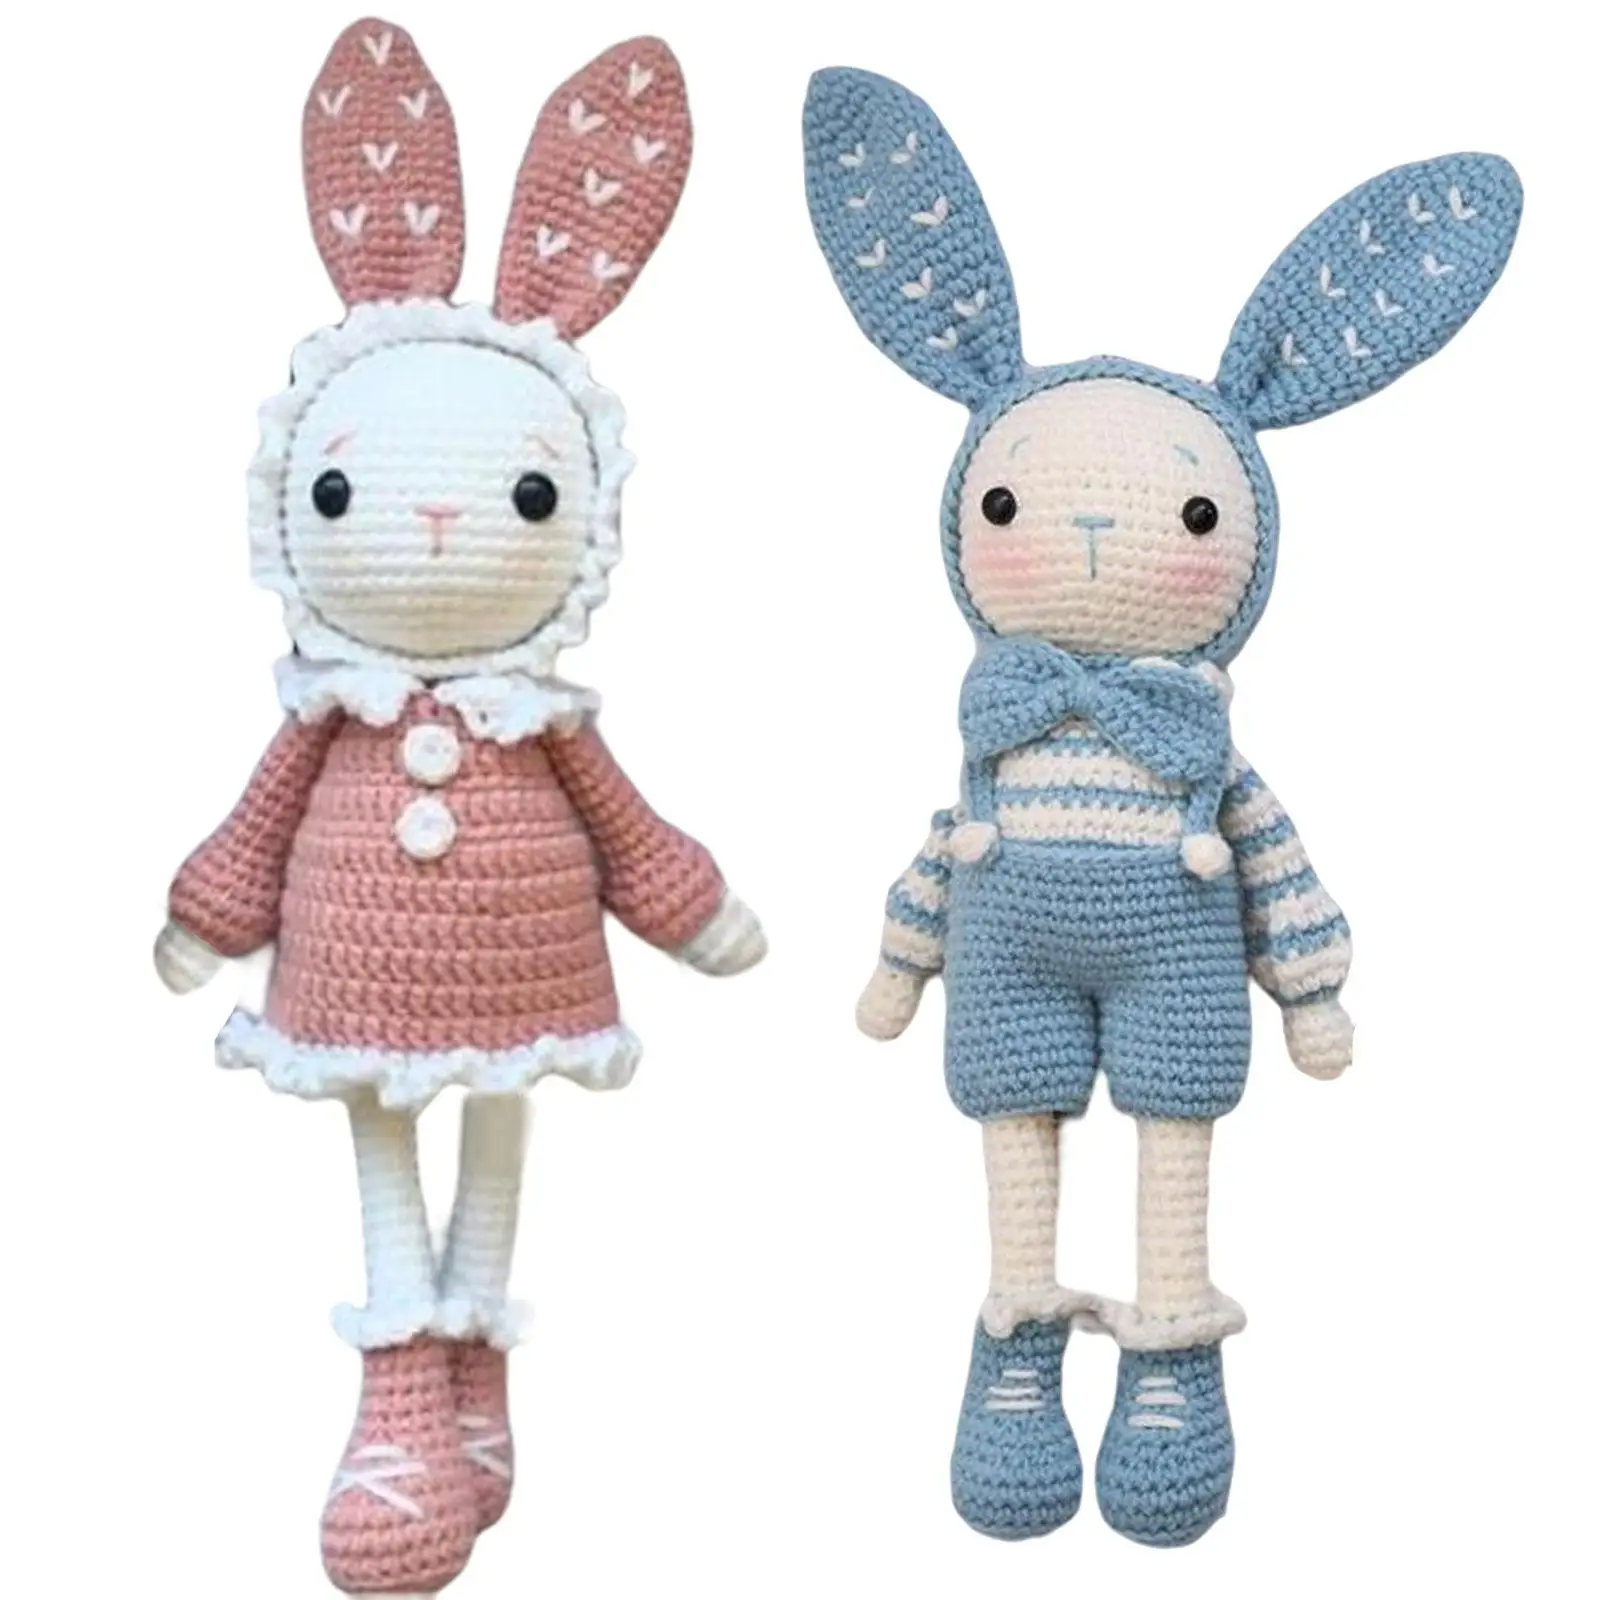 Crochet Kit for Beginners Rabbit Doll for Adults Crochet Craft Set